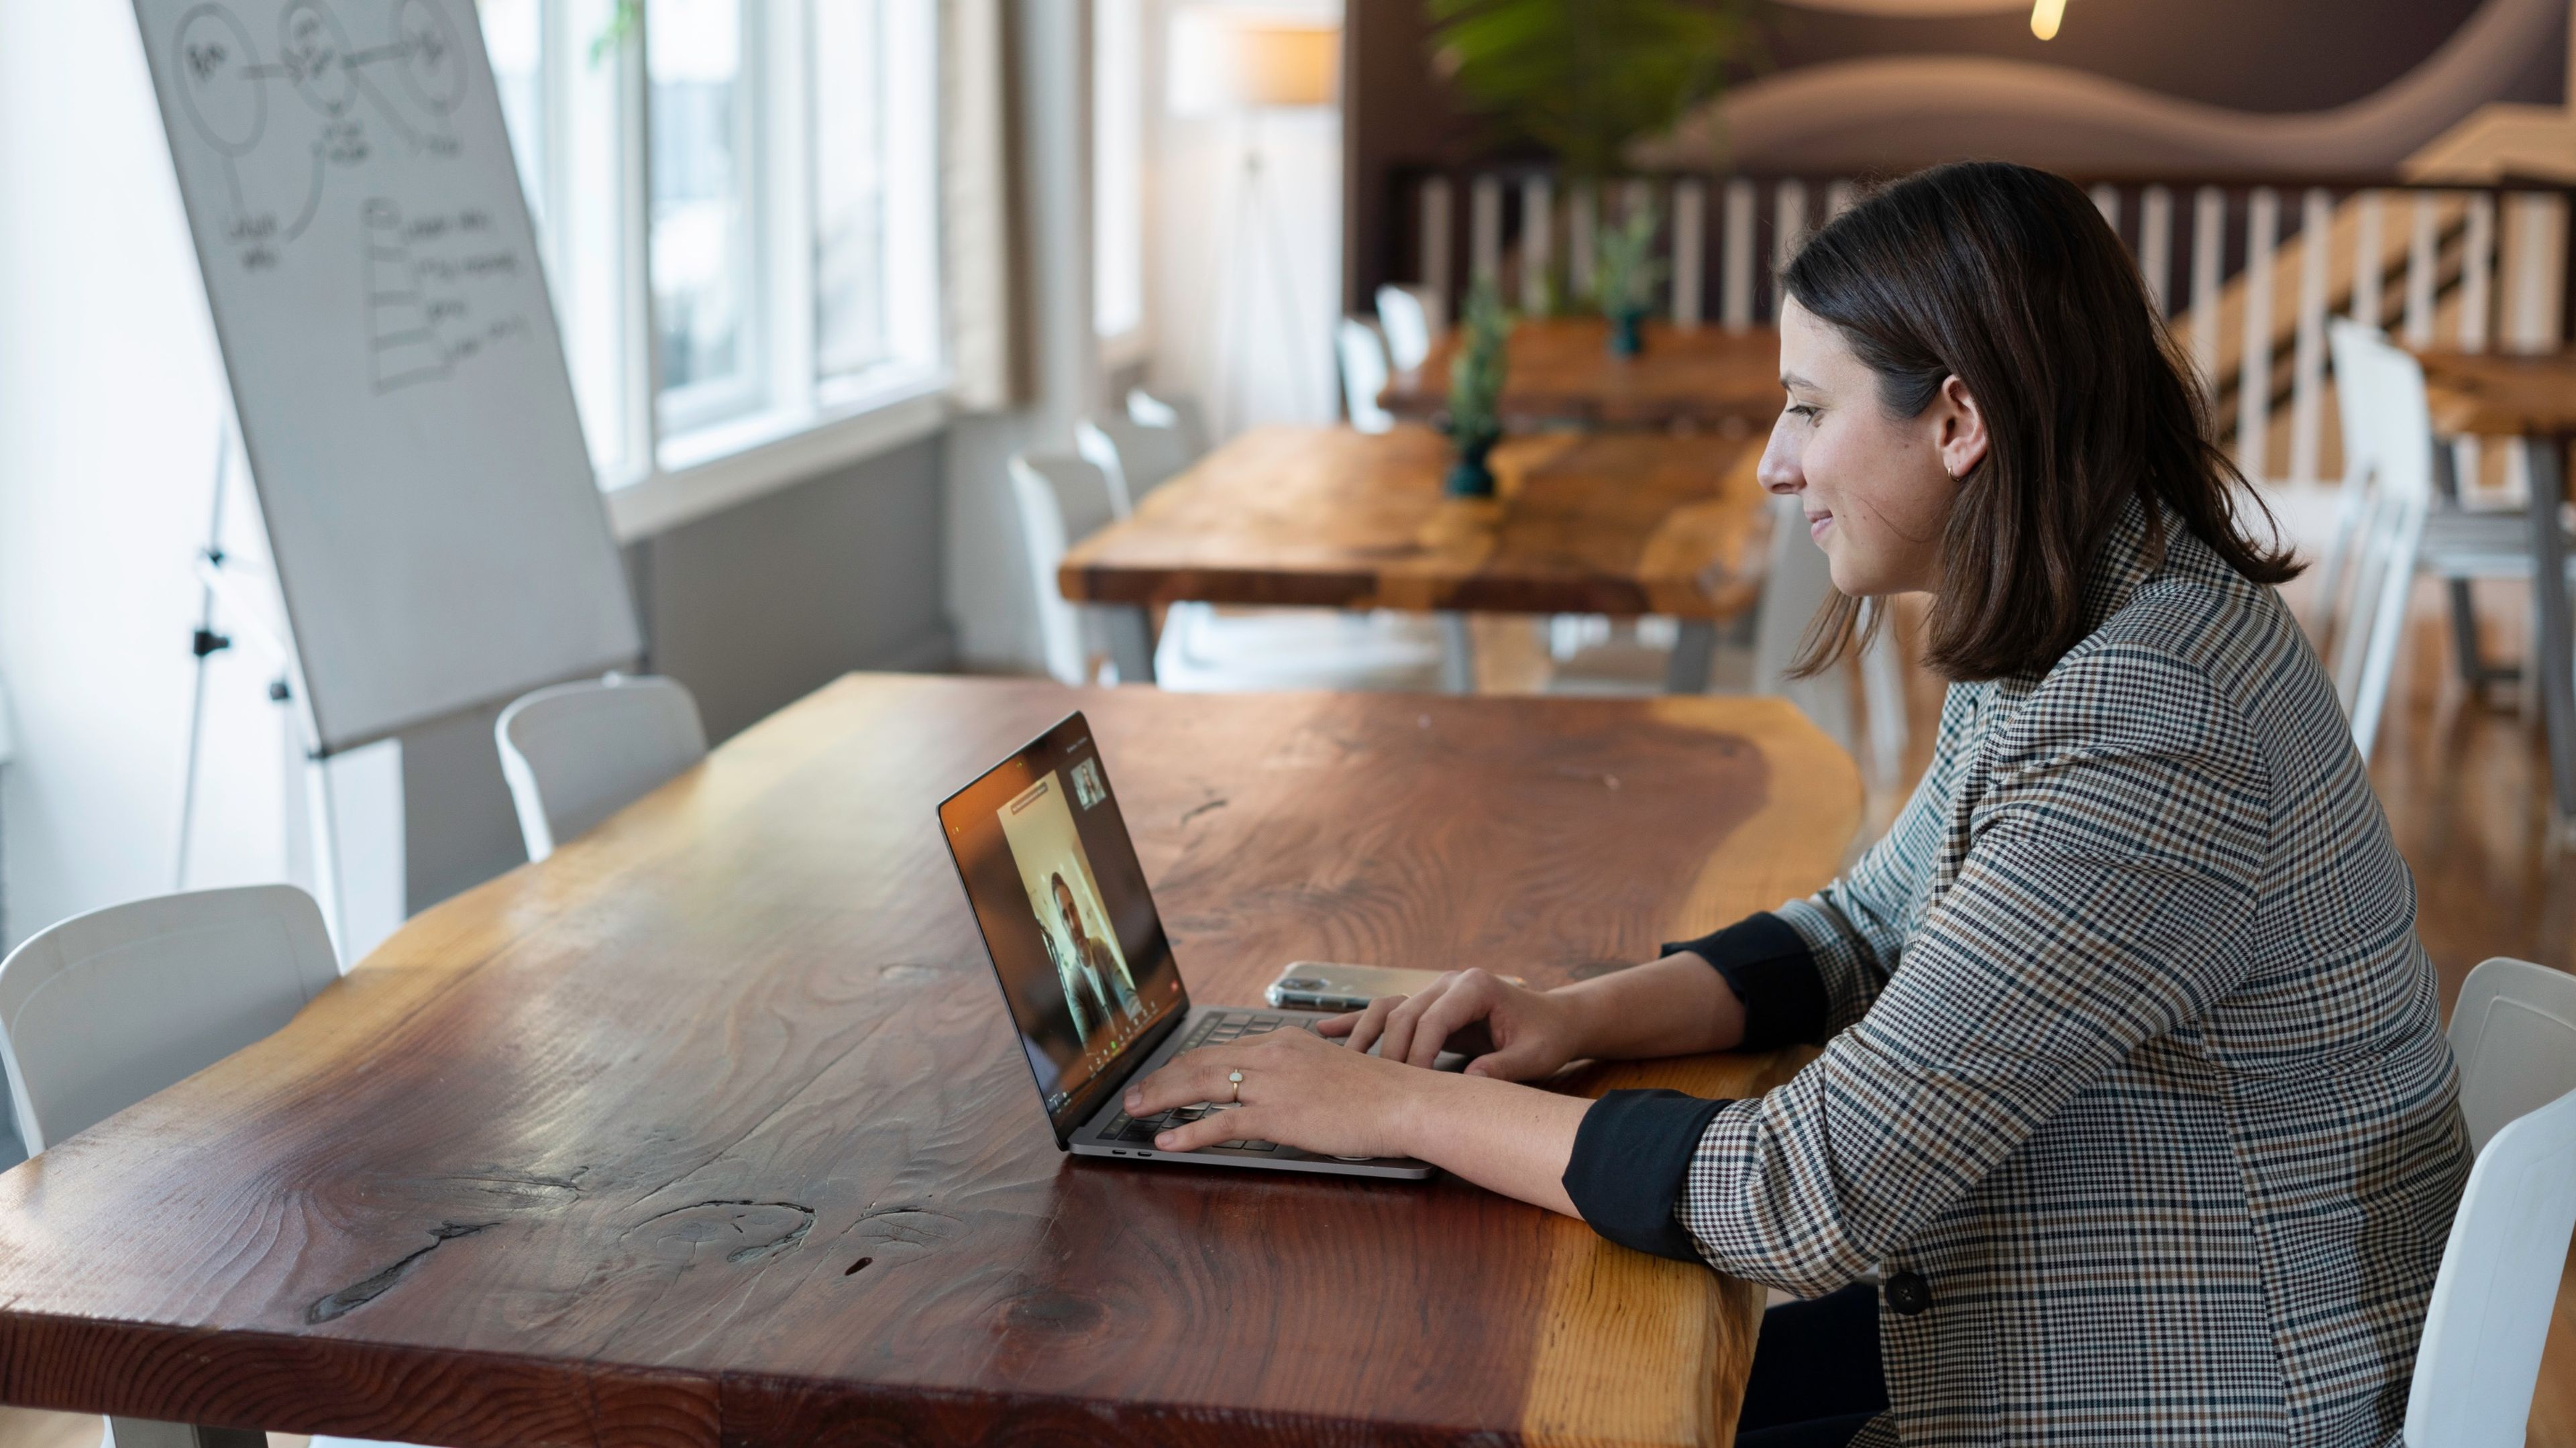 Una mujer atiende a una reunión virtual con su portátil en una zona común de una oficina